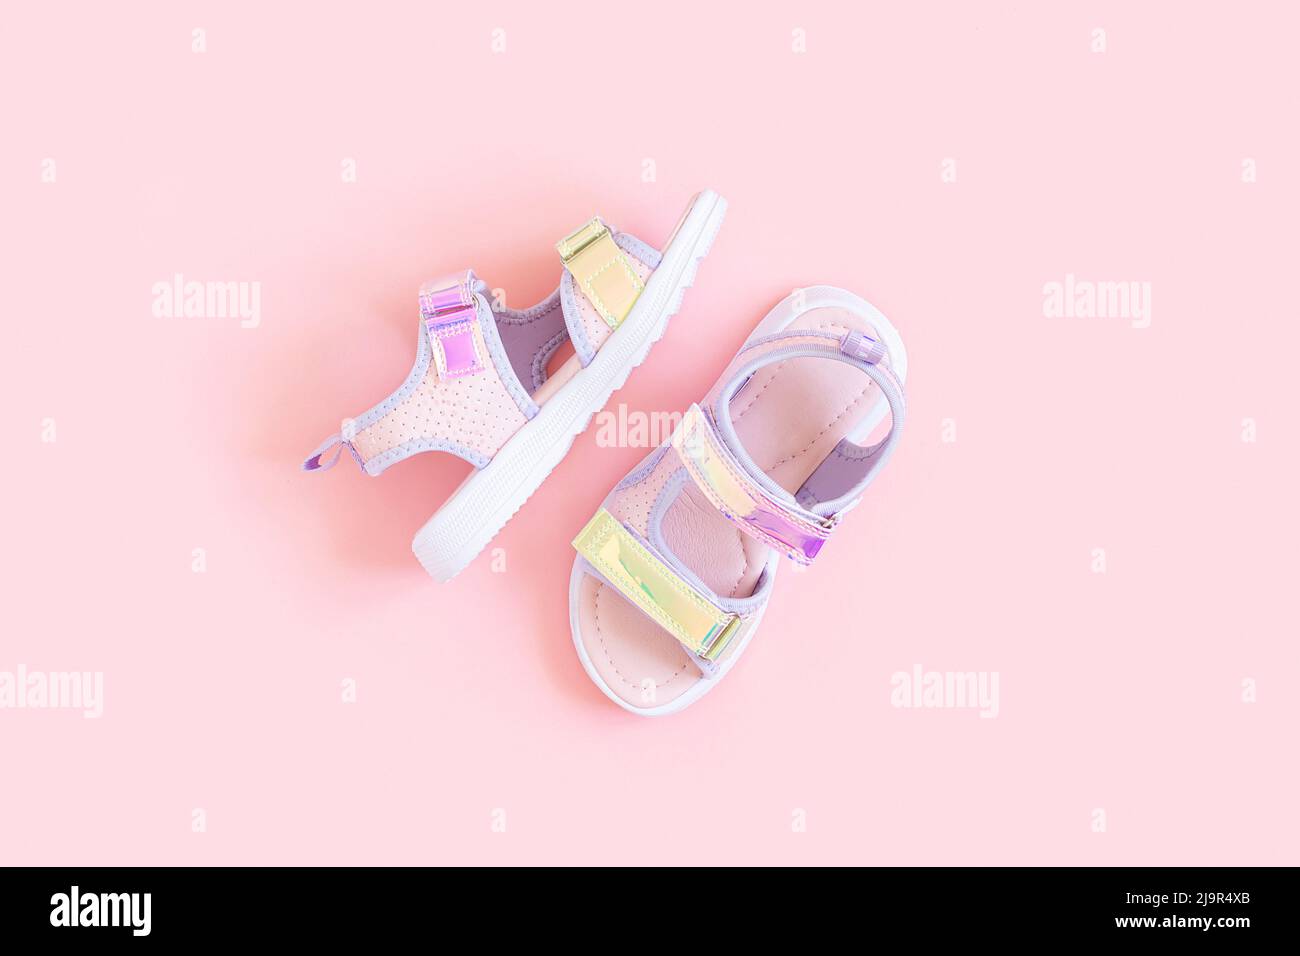 Eleganti sandali olografici per bambini su sfondo rosa. Scarpe estive alla moda lucenti. Disposizione piatta, vista dall'alto. Foto Stock